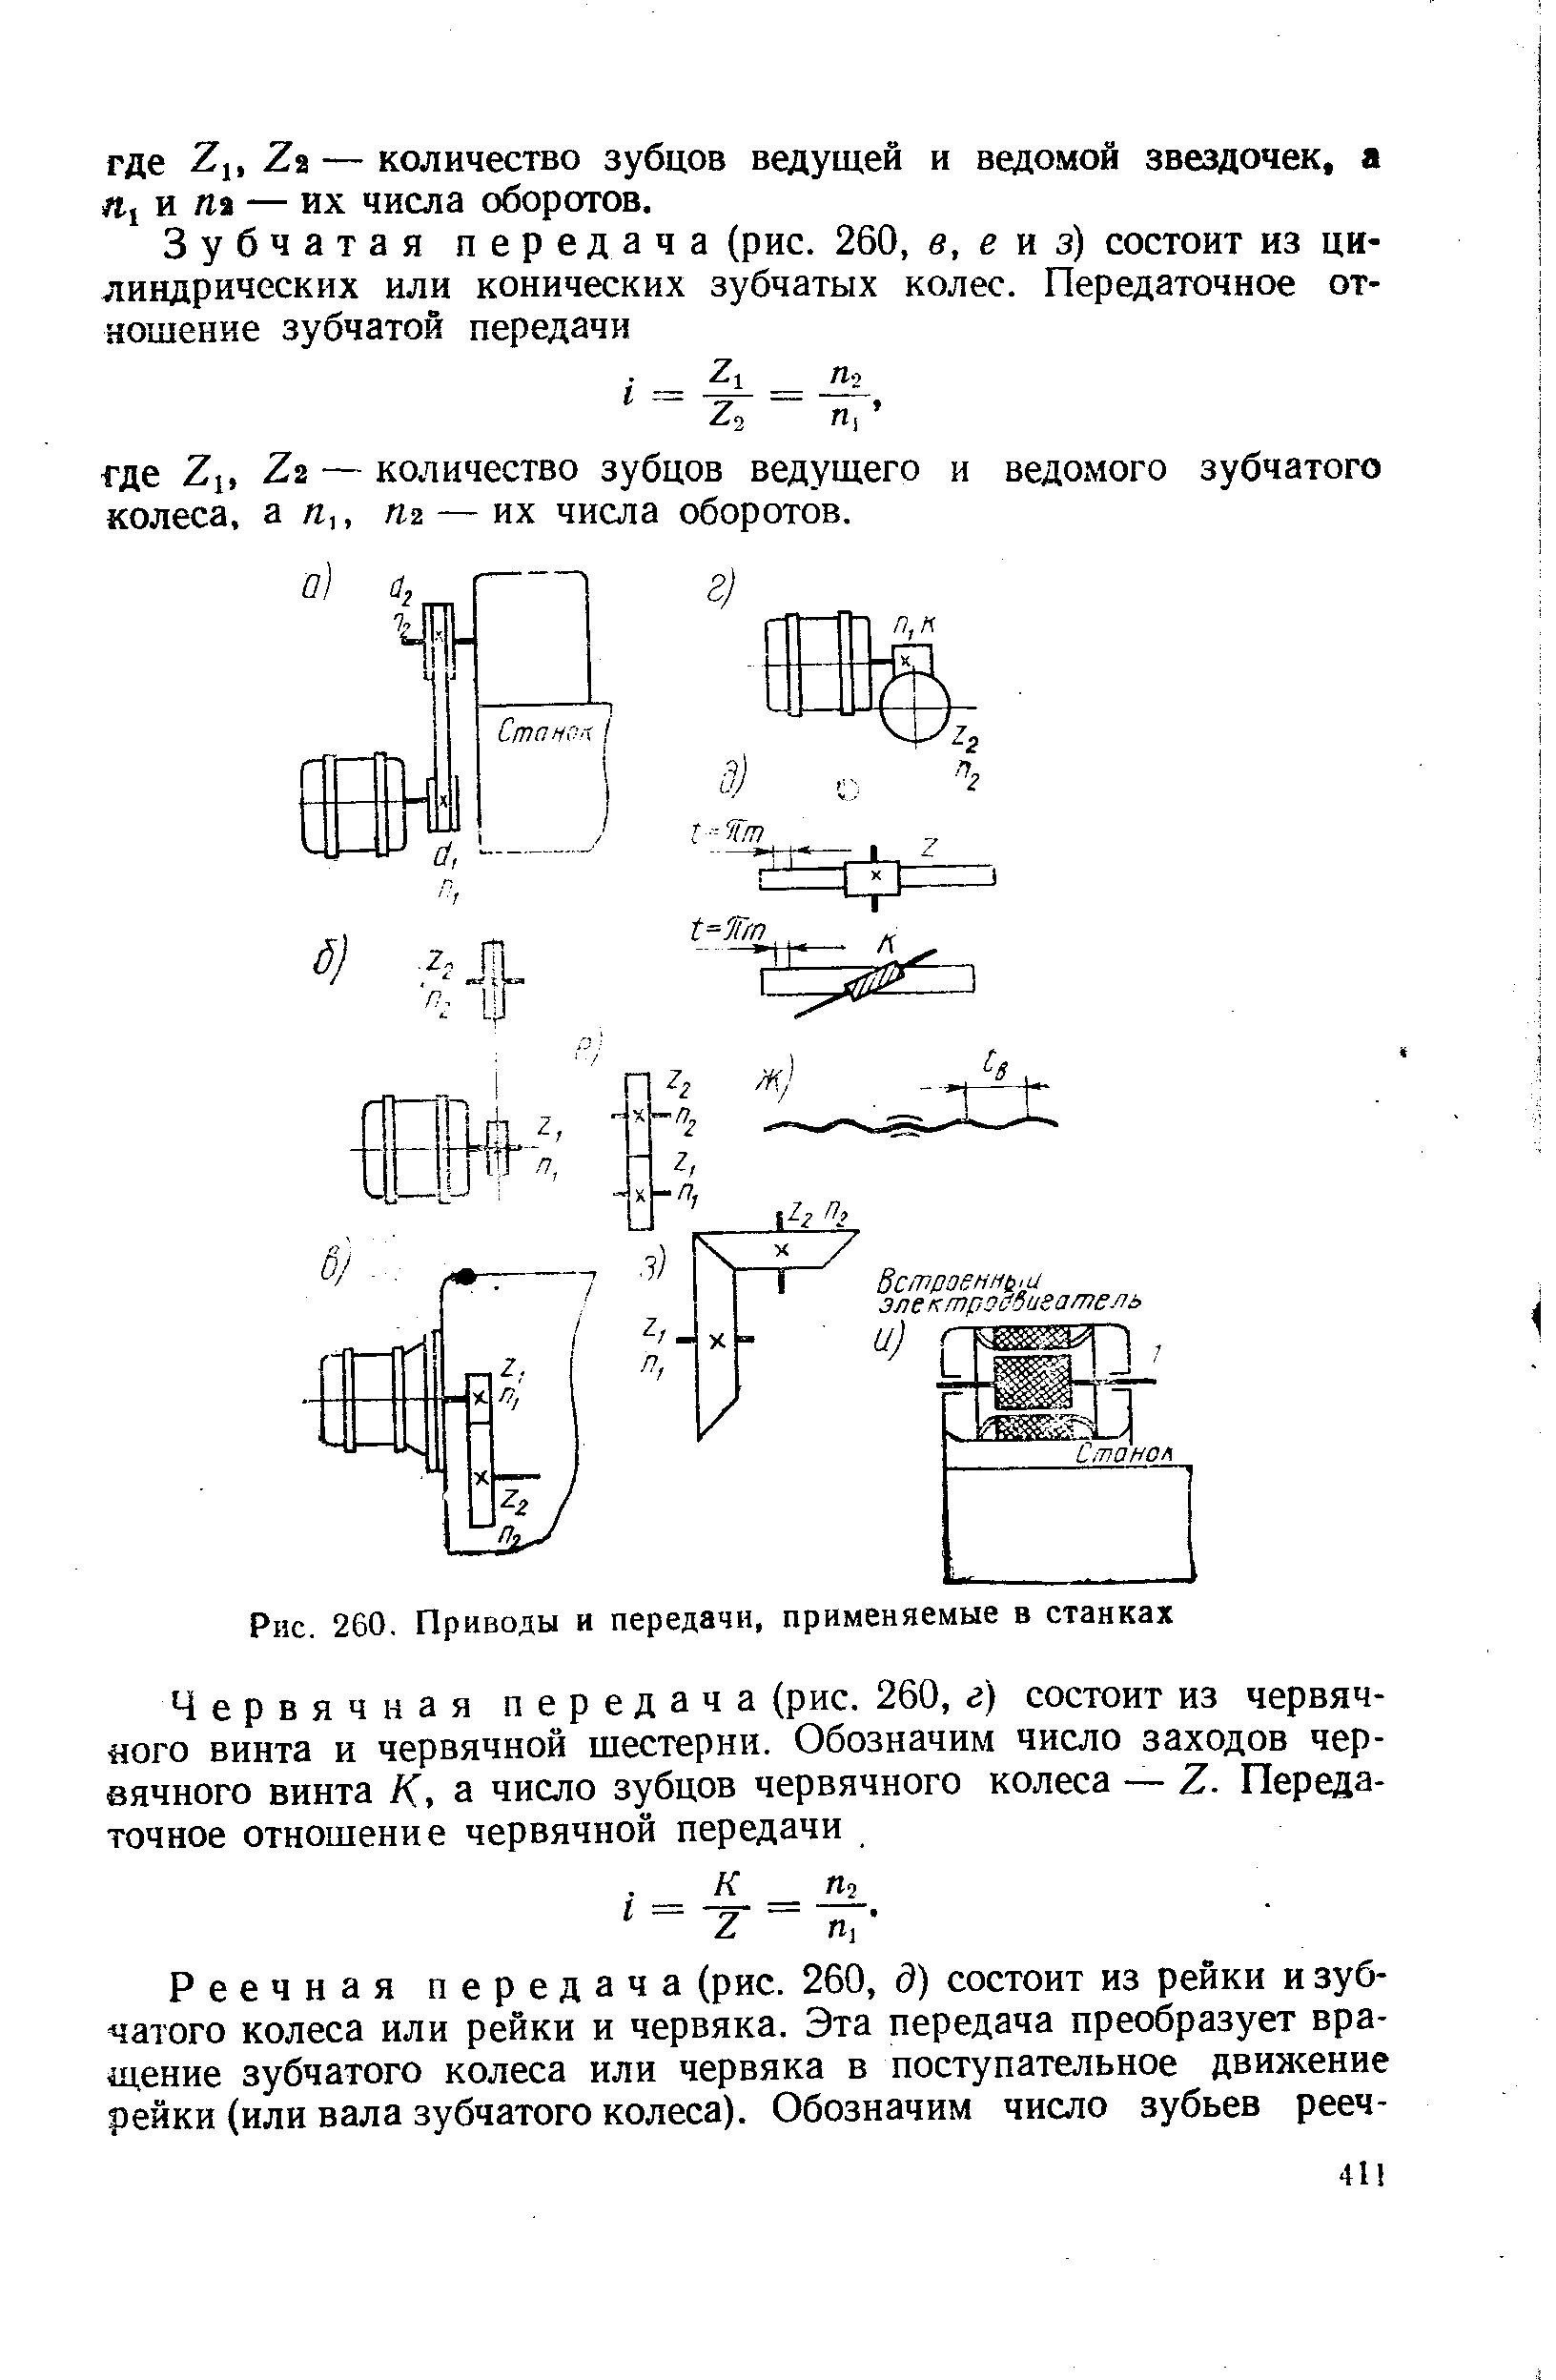 Рис. 260, Приводы и передачи, применяемые в станках
